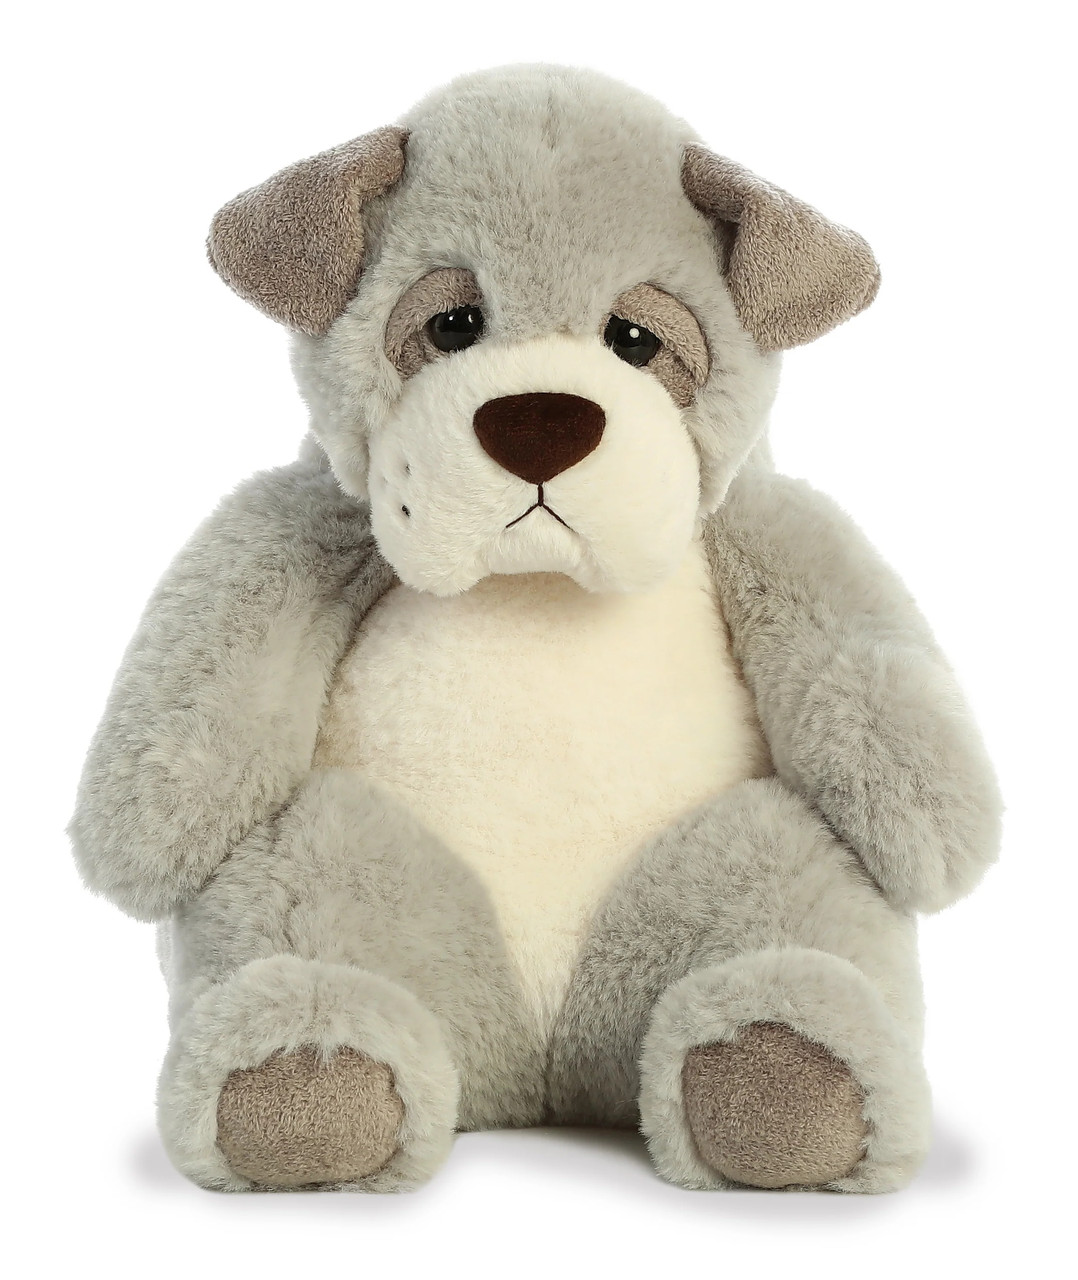 Sluuumpy Da Dog, Plush 15 Stuffed Animal Toy by Aurora - Little Dreamers  Pajamas